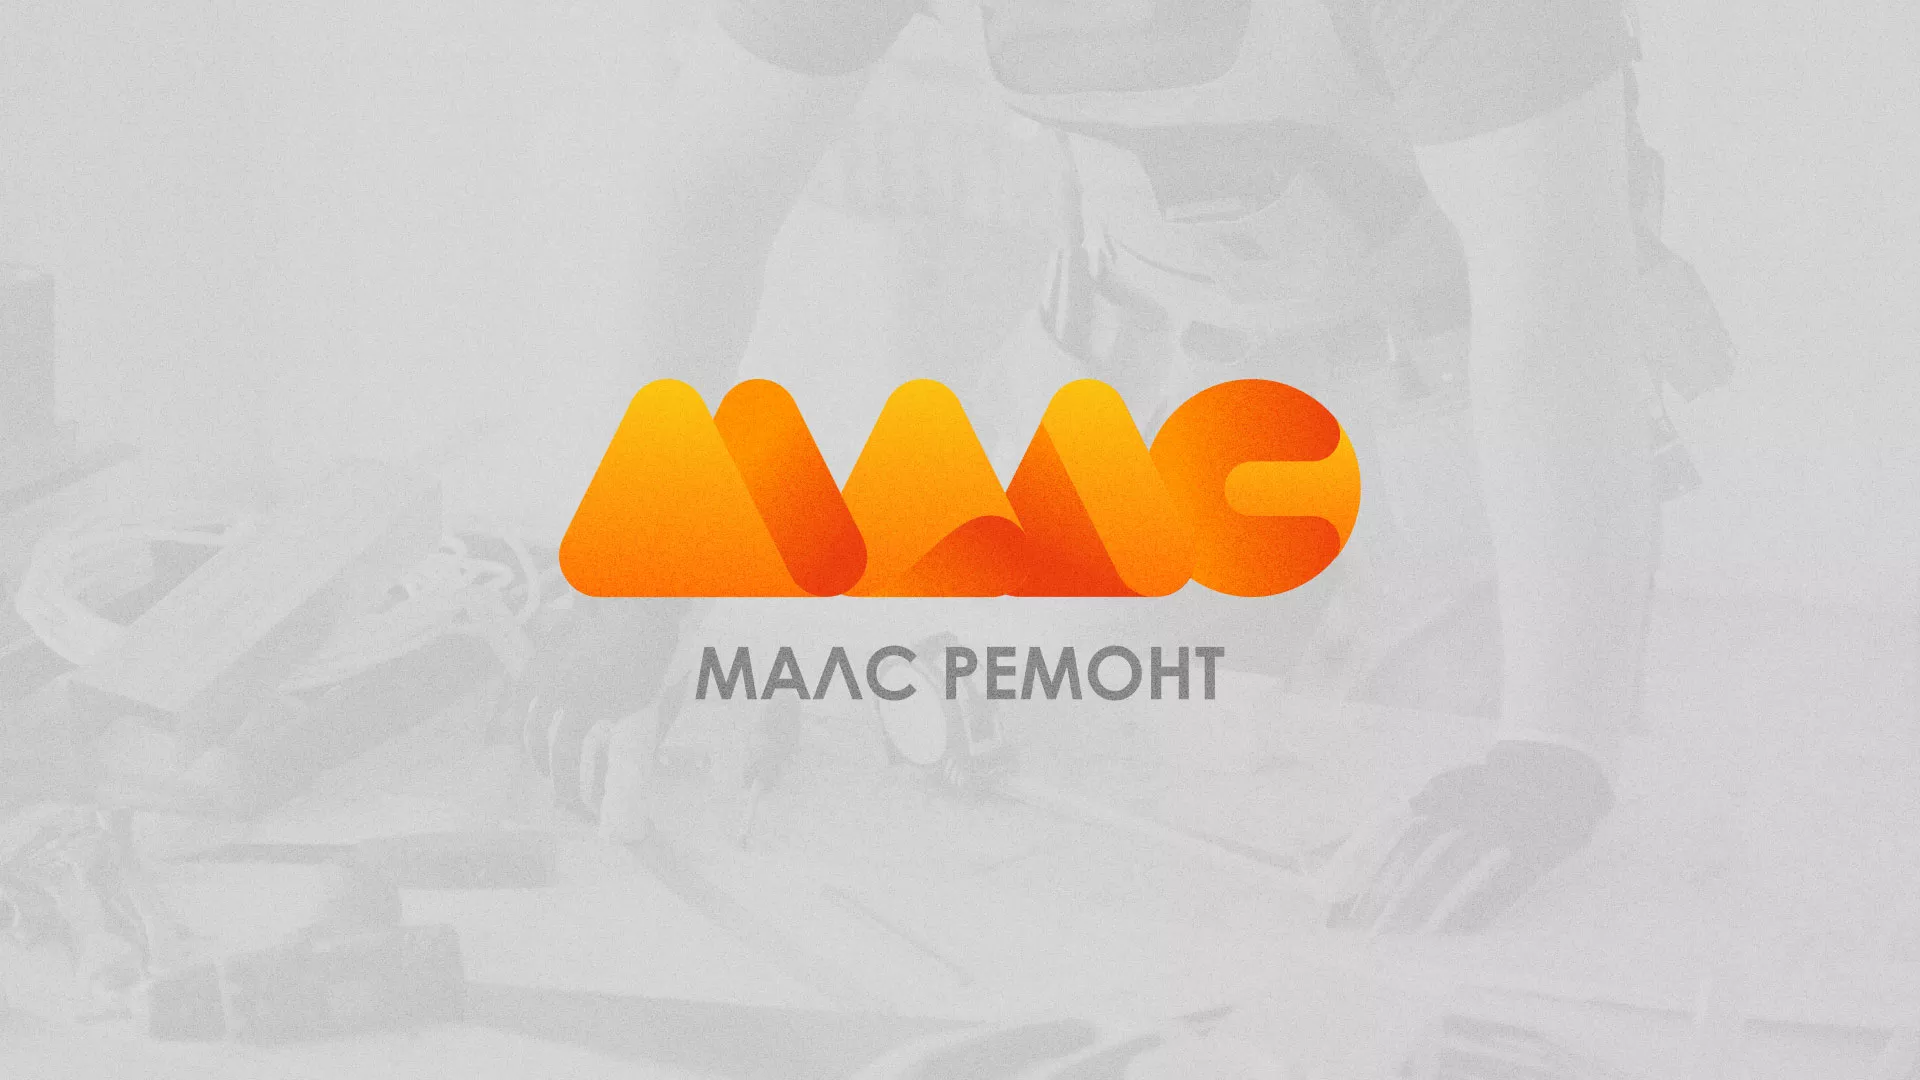 Создание логотипа для компании «МАЛС РЕМОНТ» в Болгаре